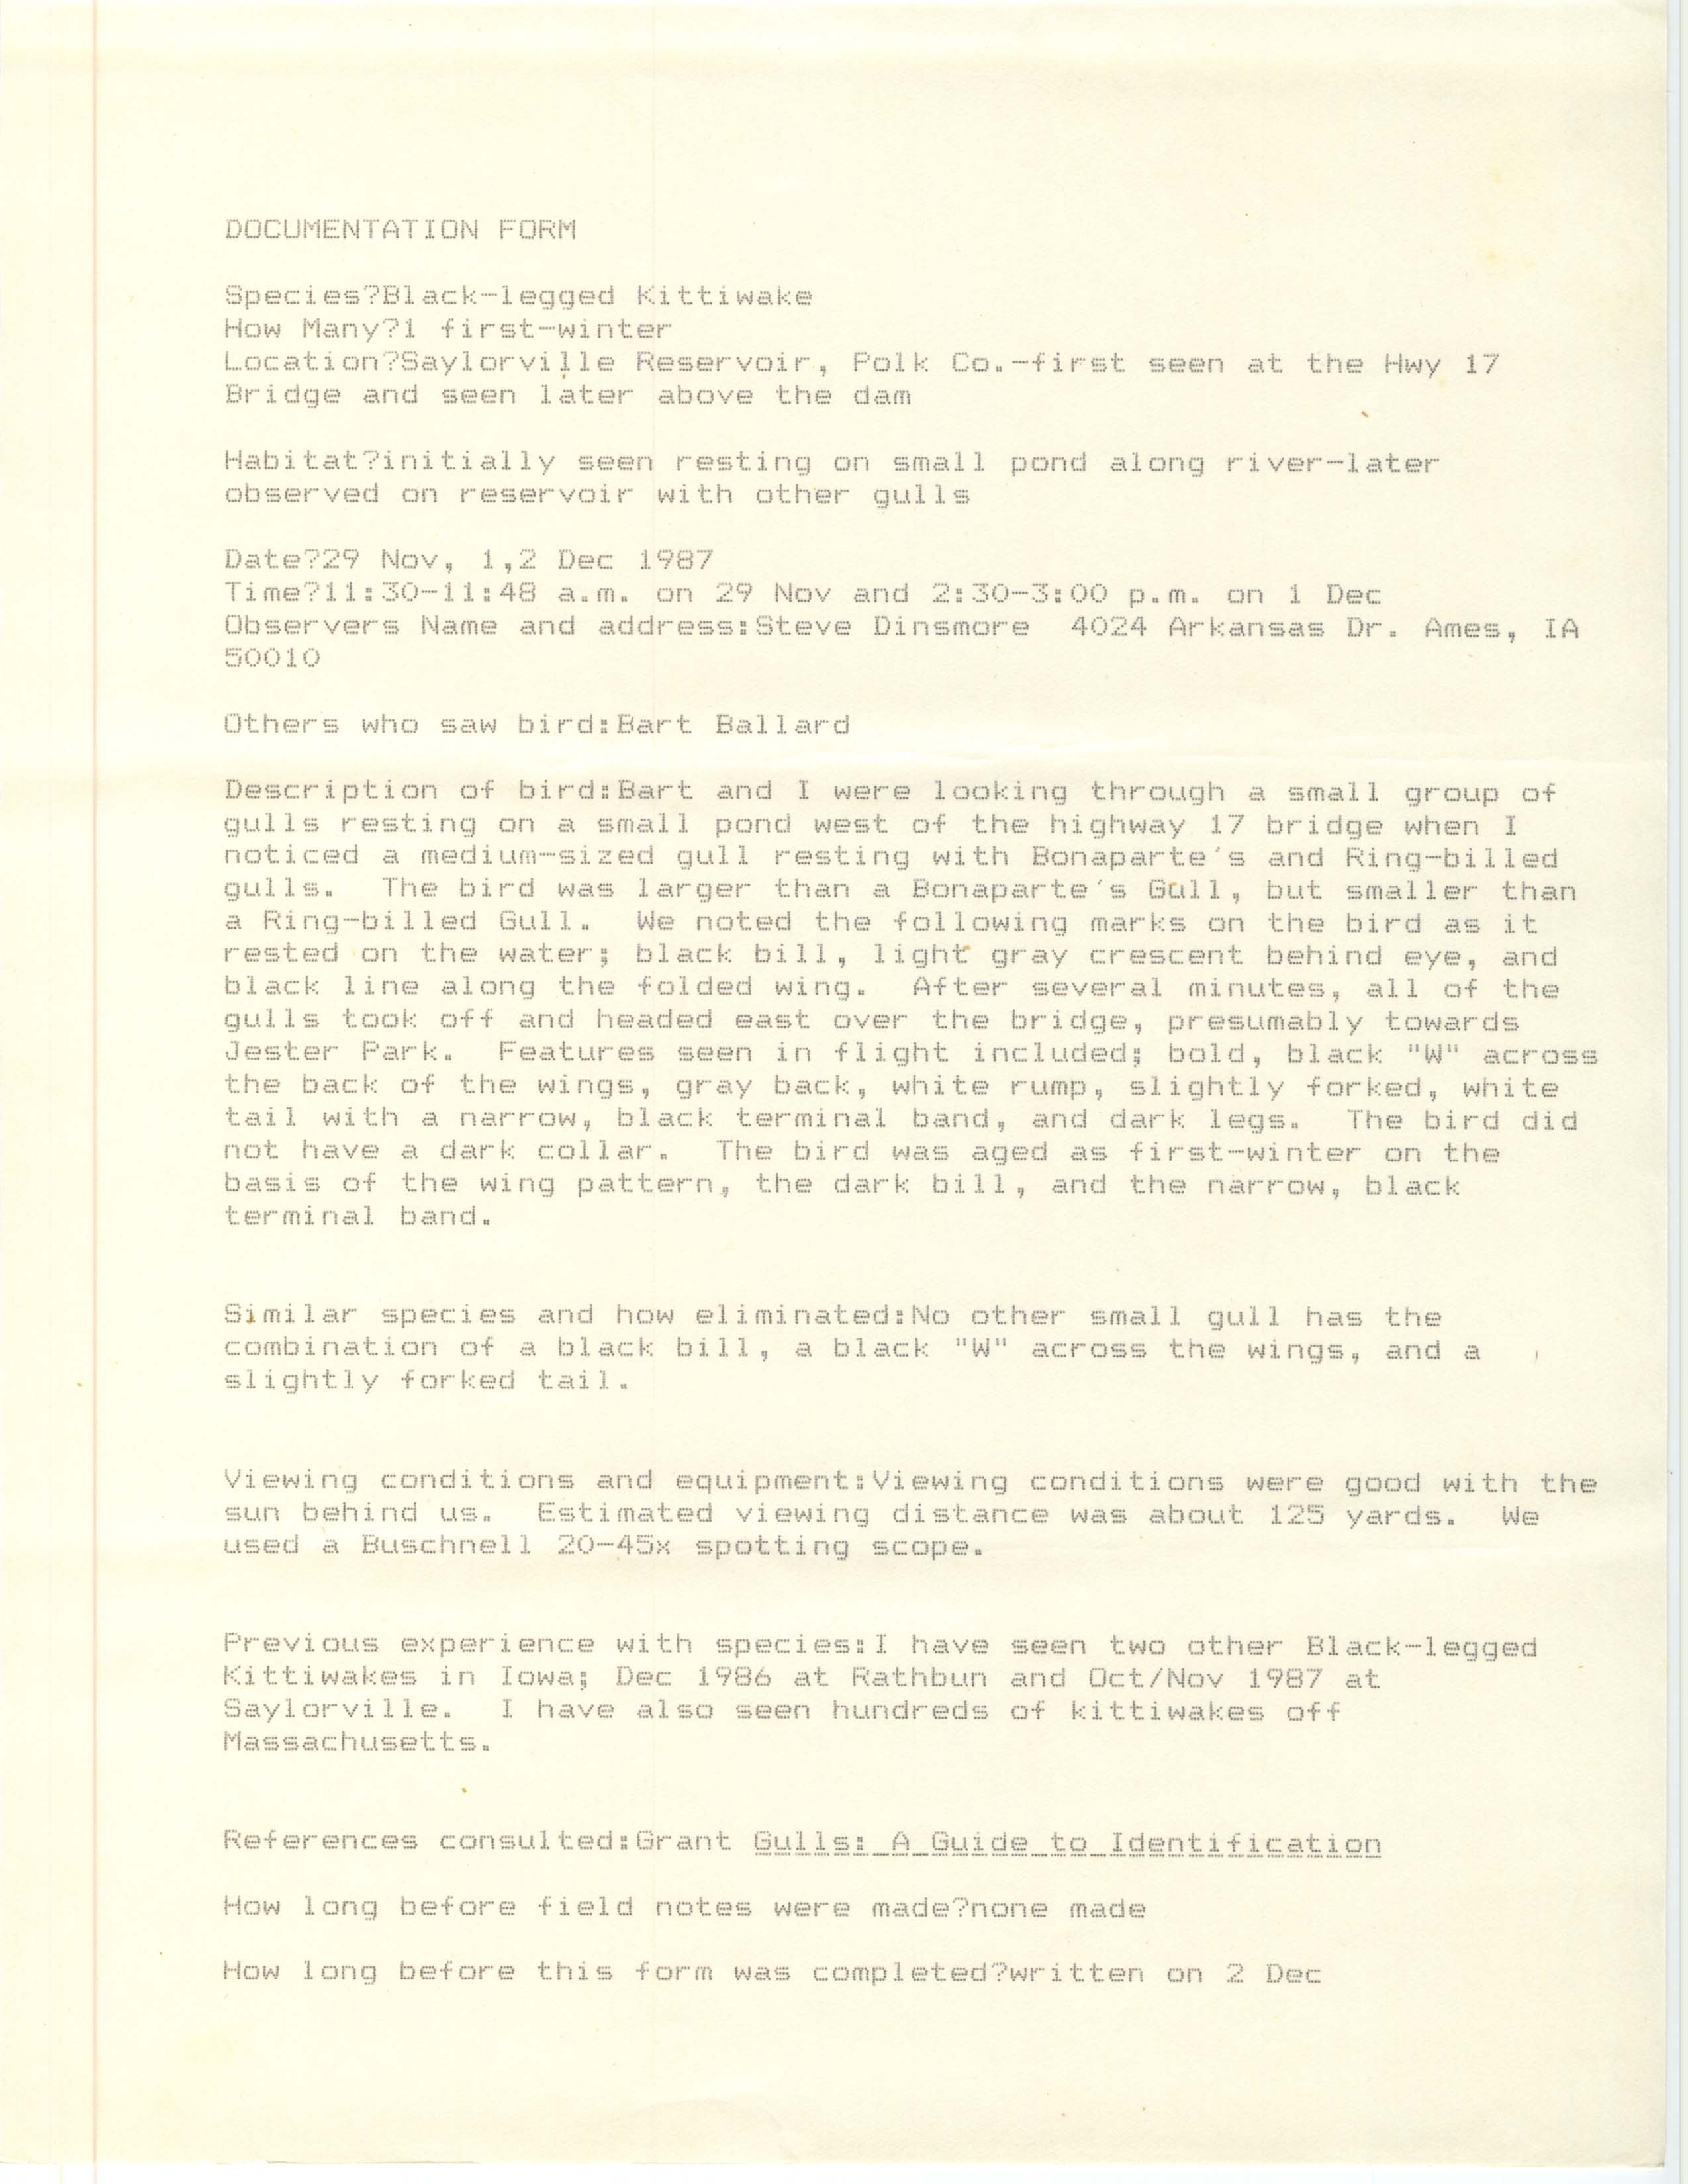 Rare bird documentation form for Black-legged Kittiwake at Saylorville Reservoir in 1987